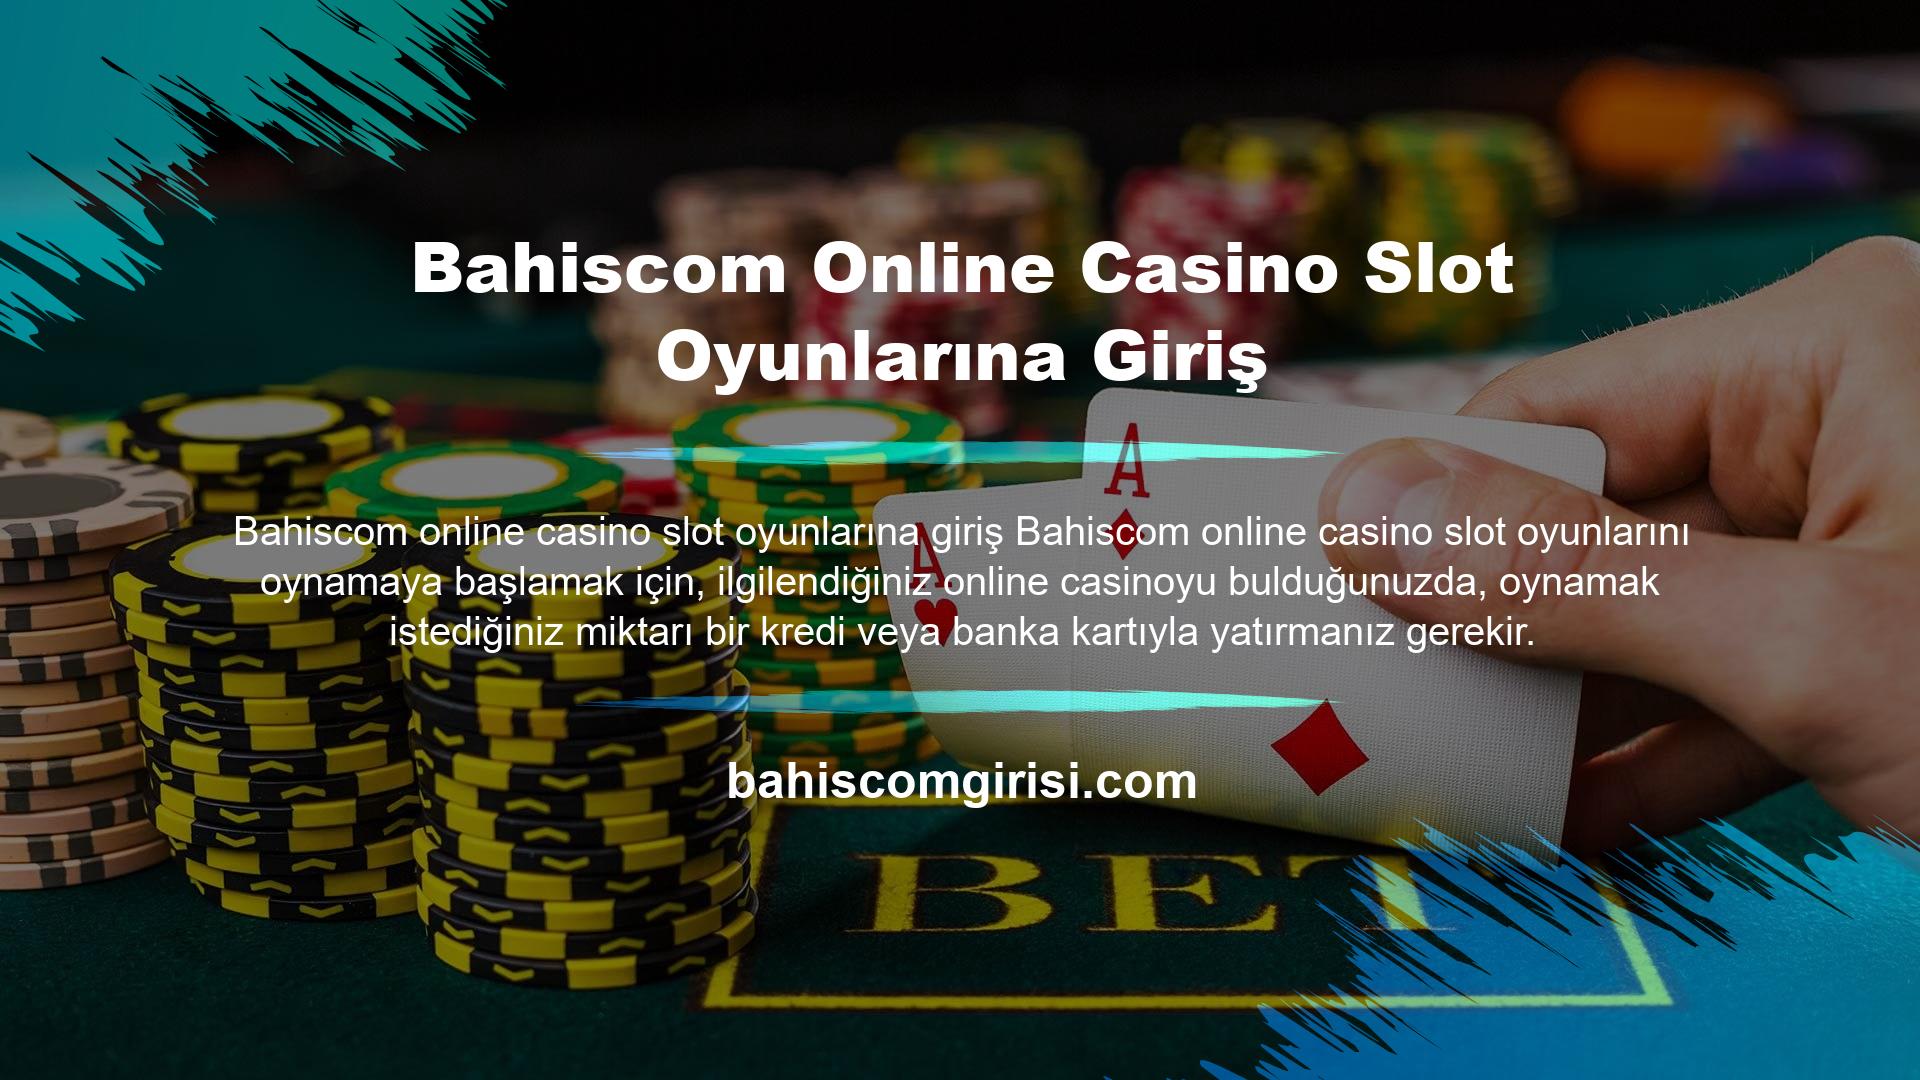 Online casino hesabınıza yatırdığınız paranın hemen harcanması gerekmez